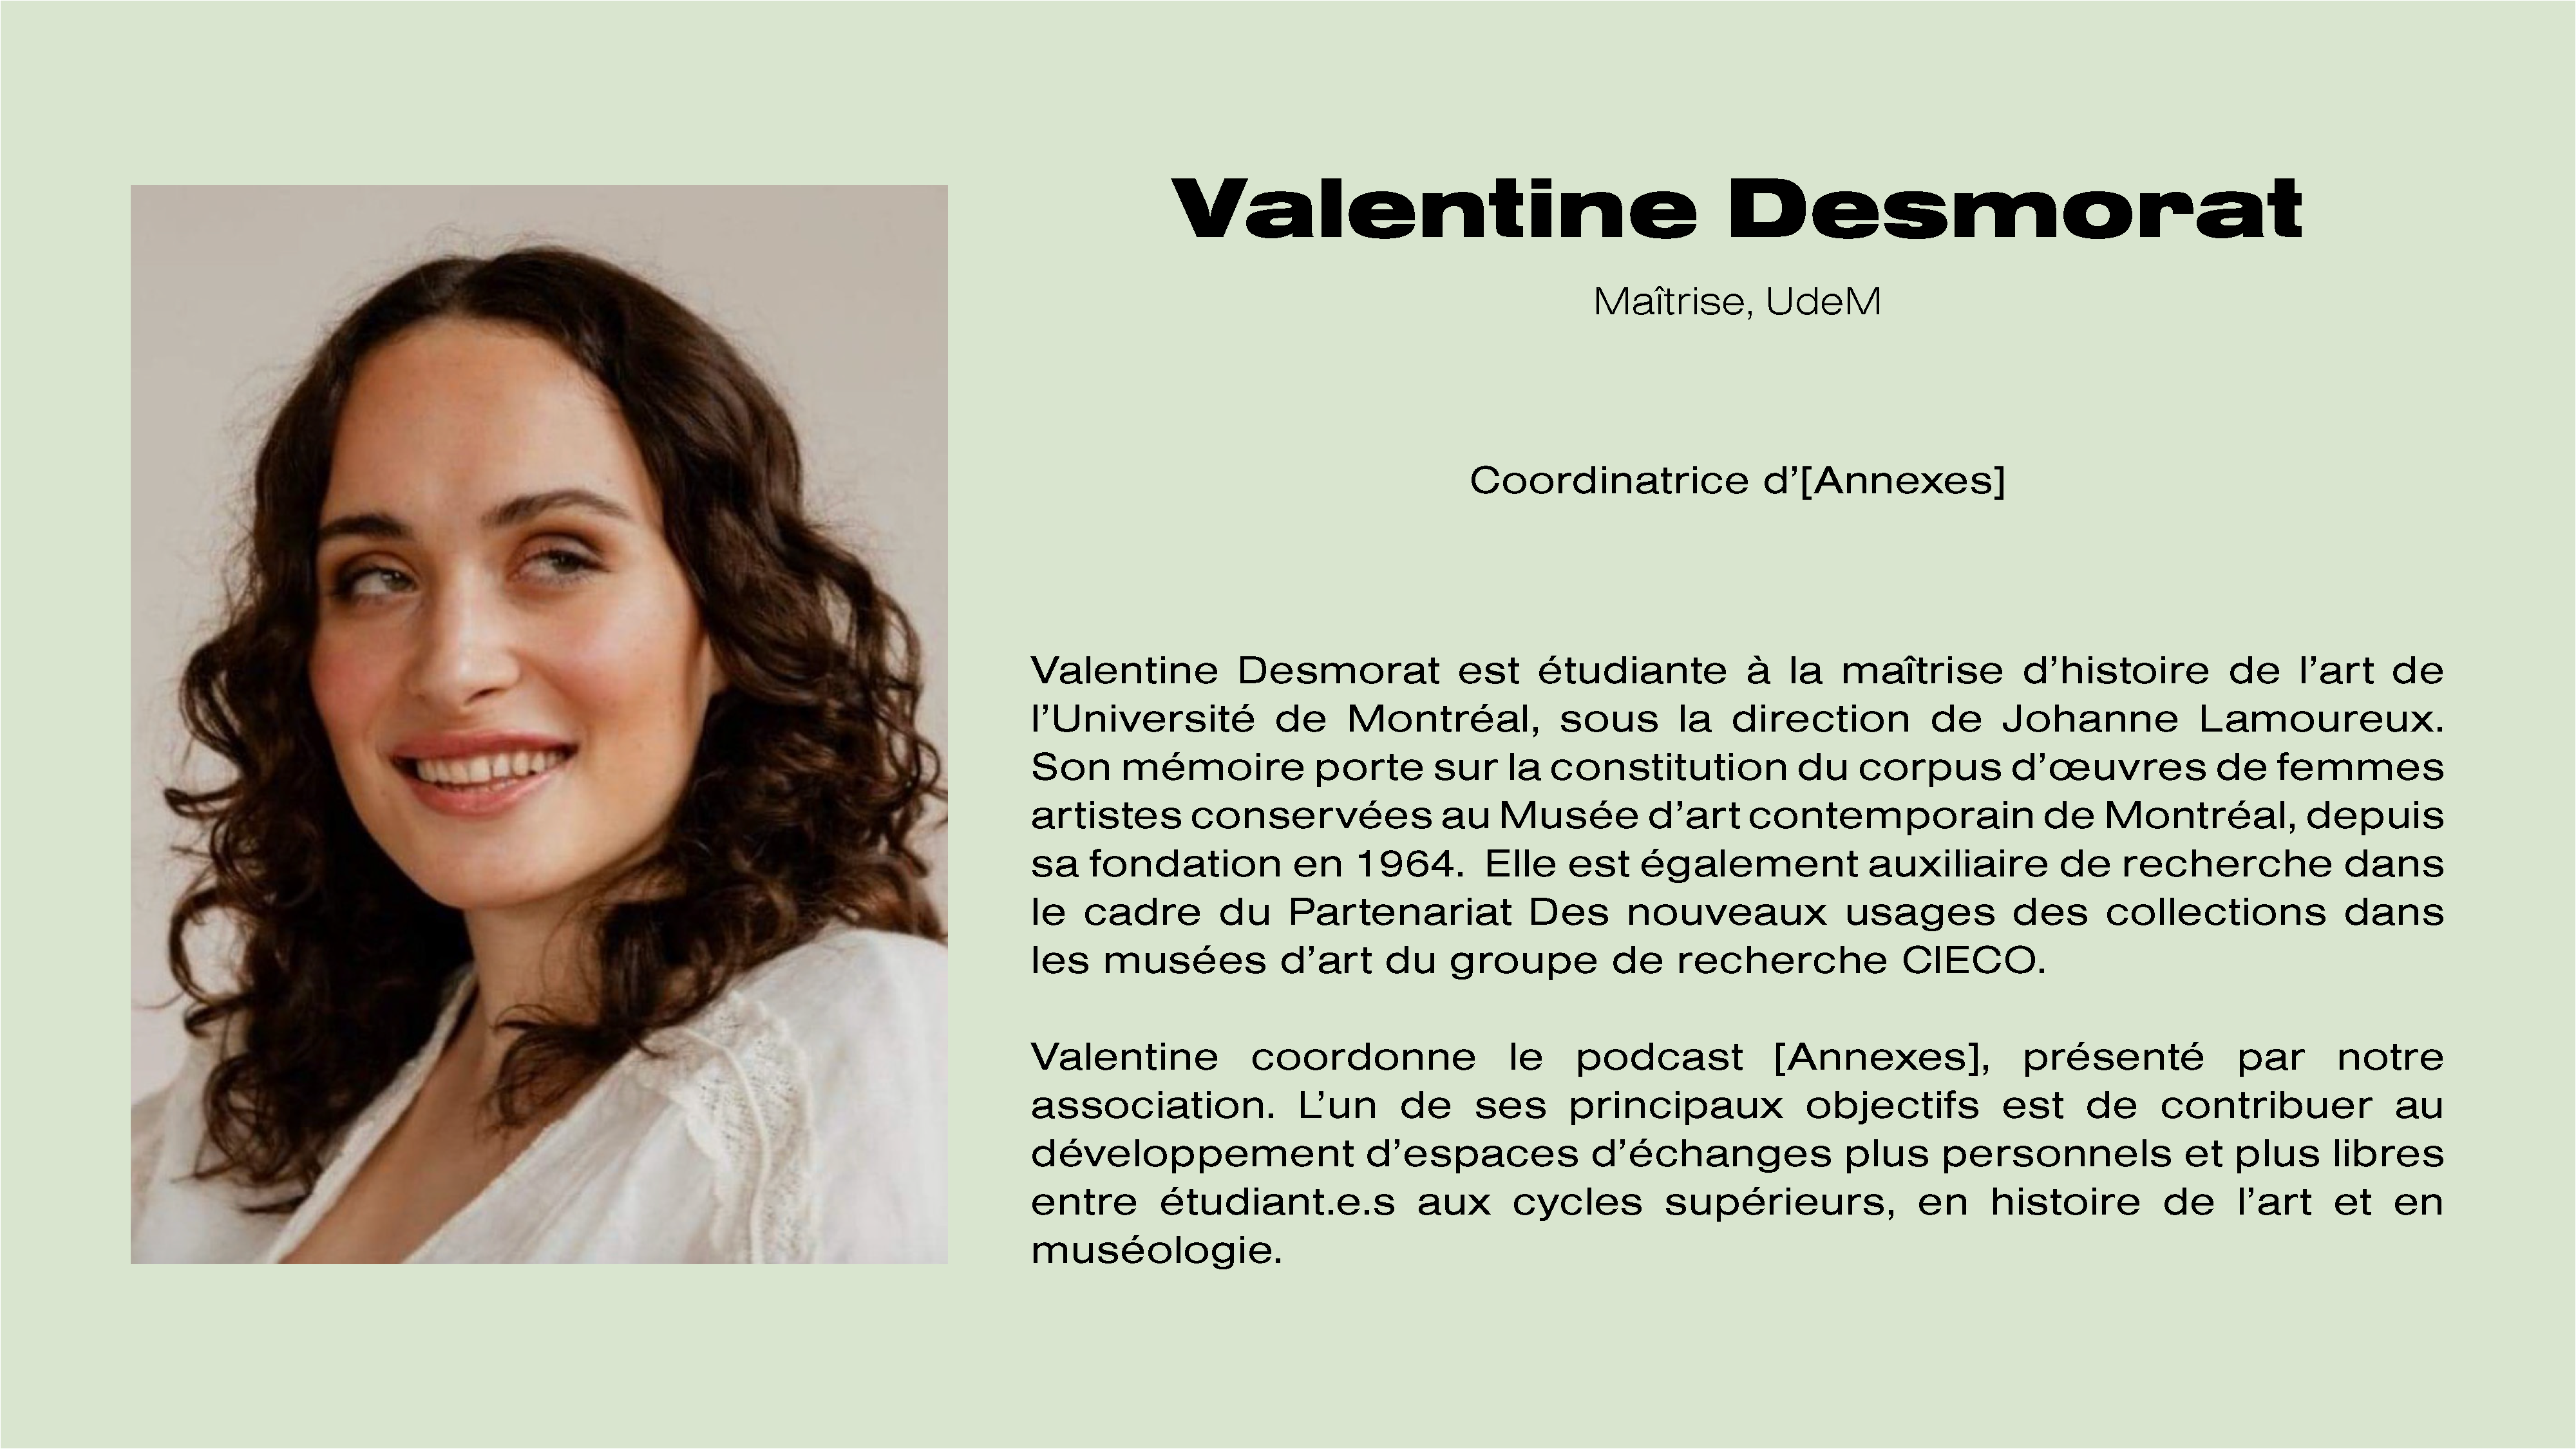 Valentine Desmorat, responsable de notre podcast